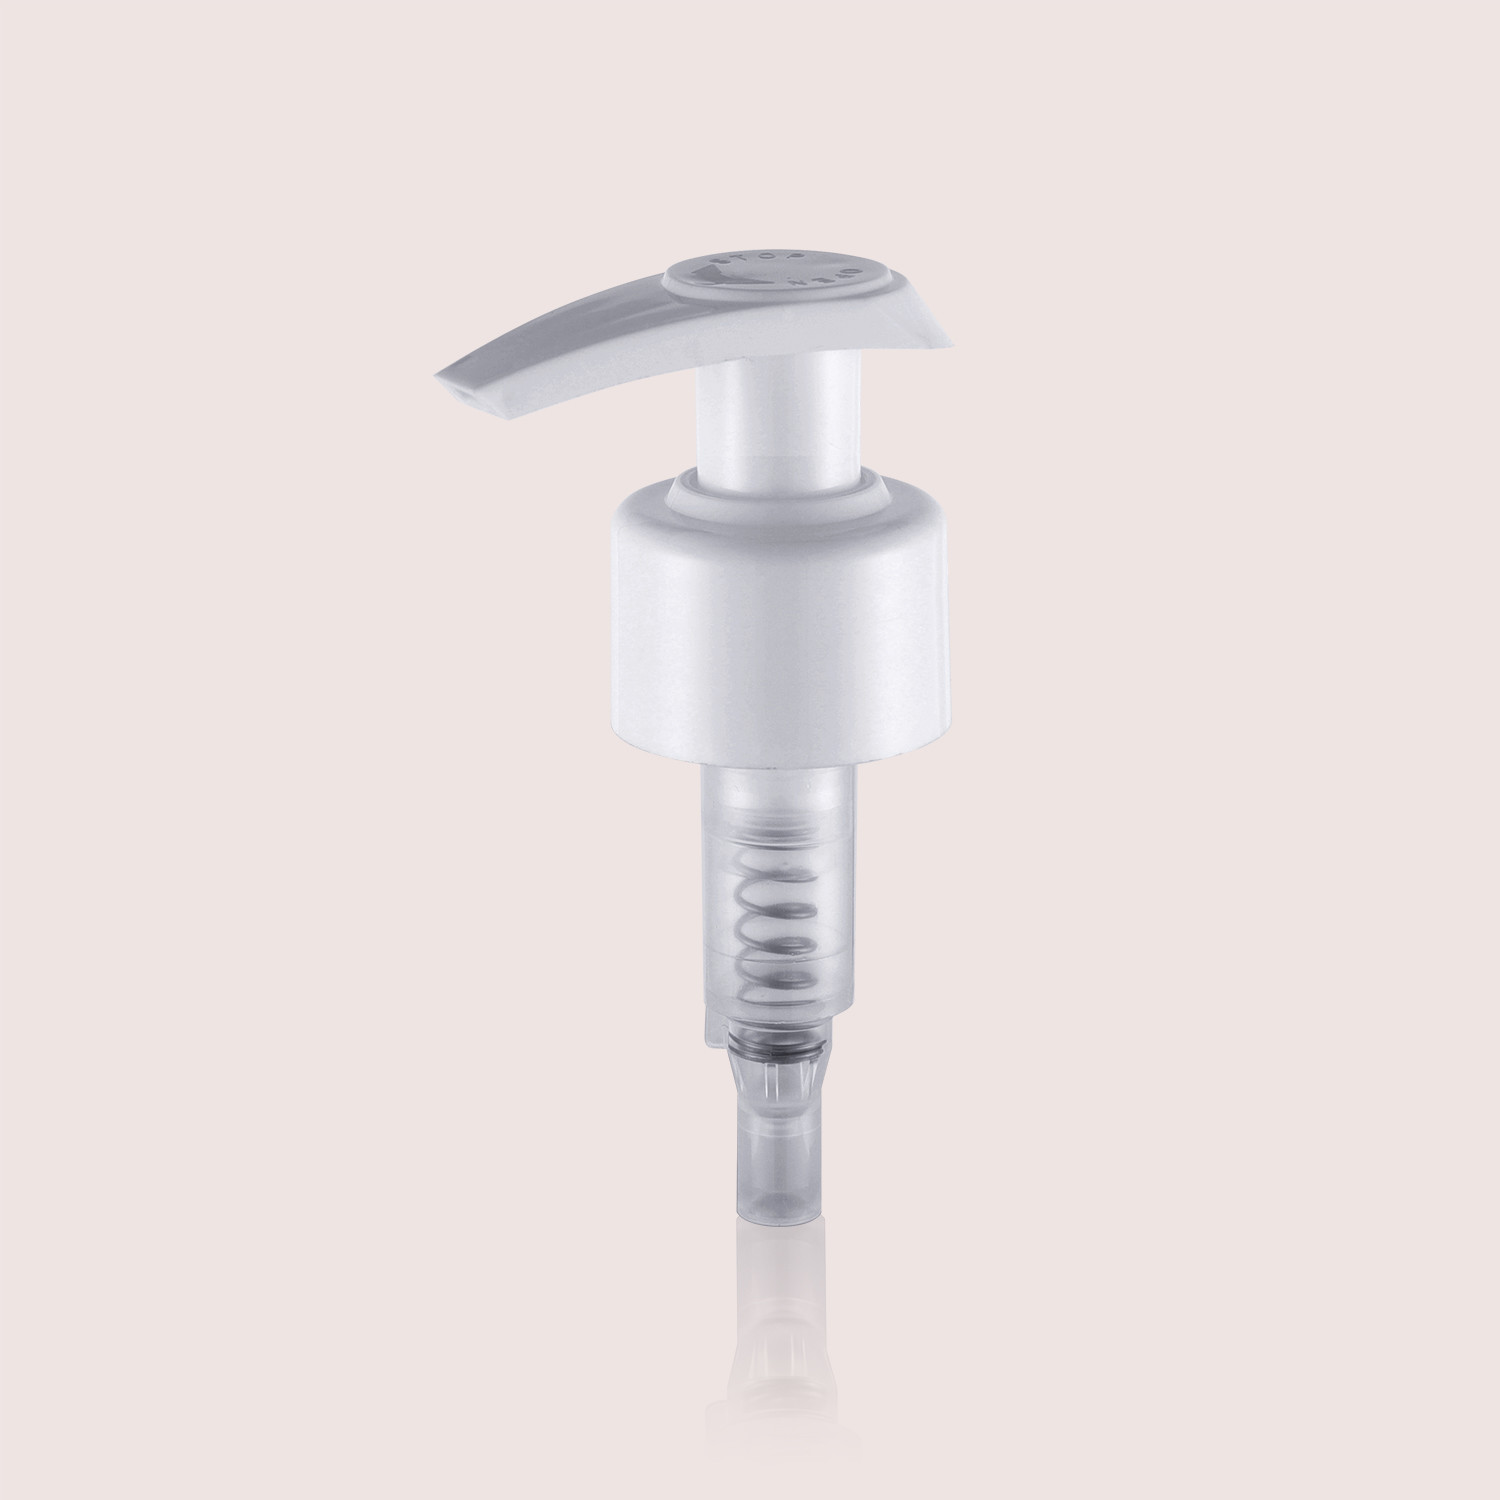  Special Design Lotion Pump Top For Liquid Soap Shampoo Pump Dispenser Manufactures